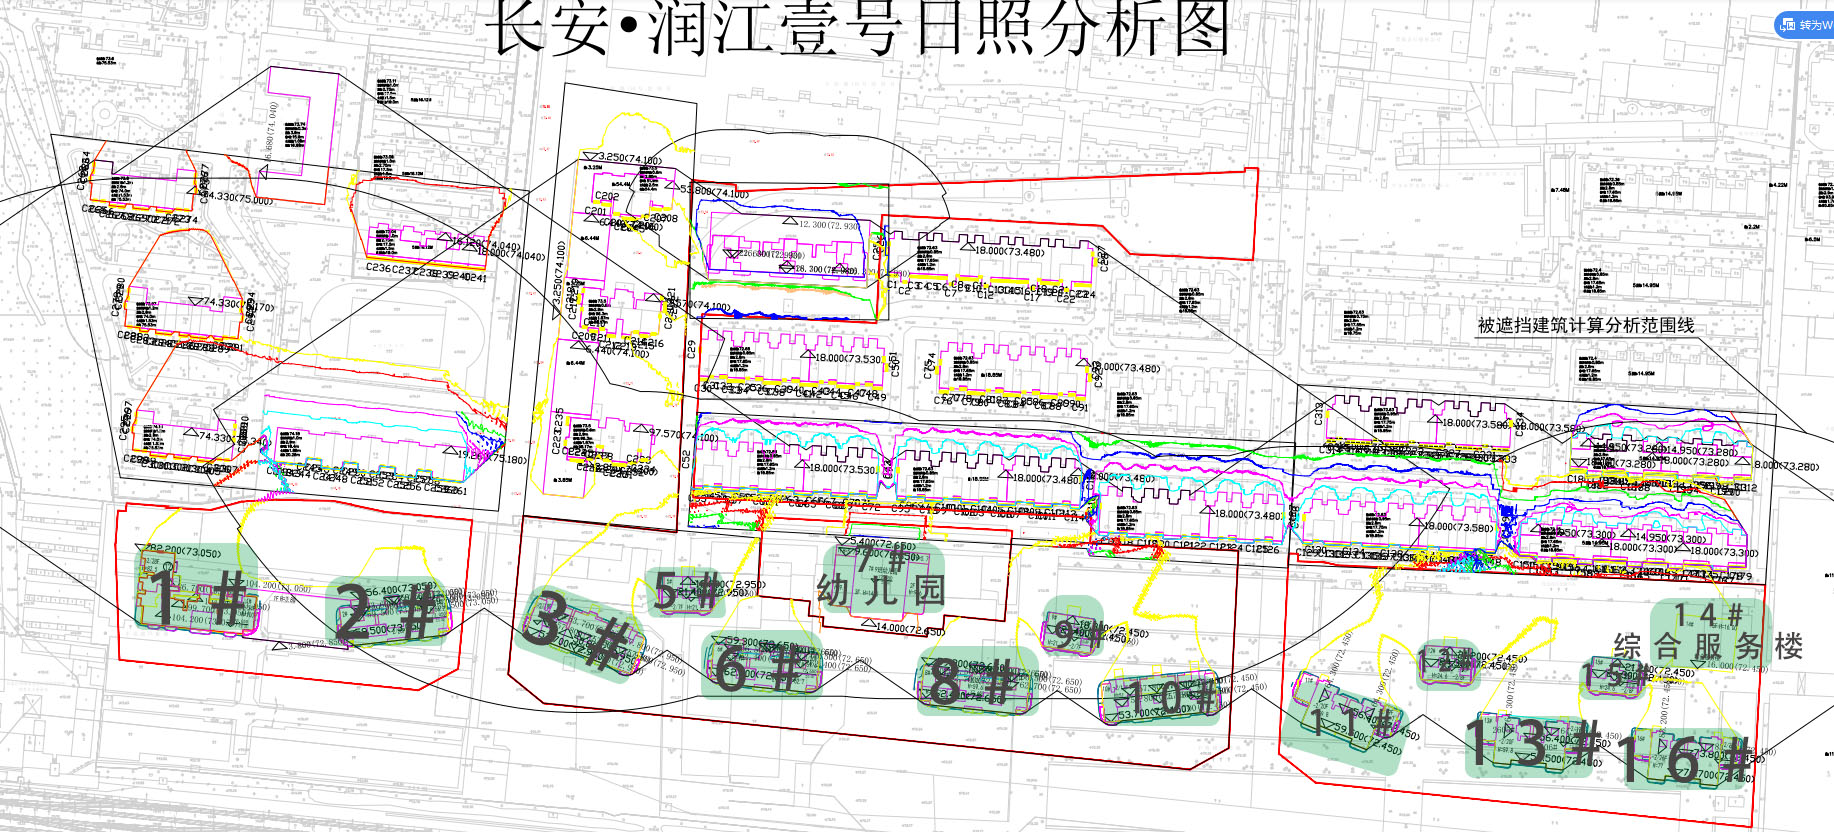 石家庄润江长安壹号规划拟建14栋住宅楼-中国网地产